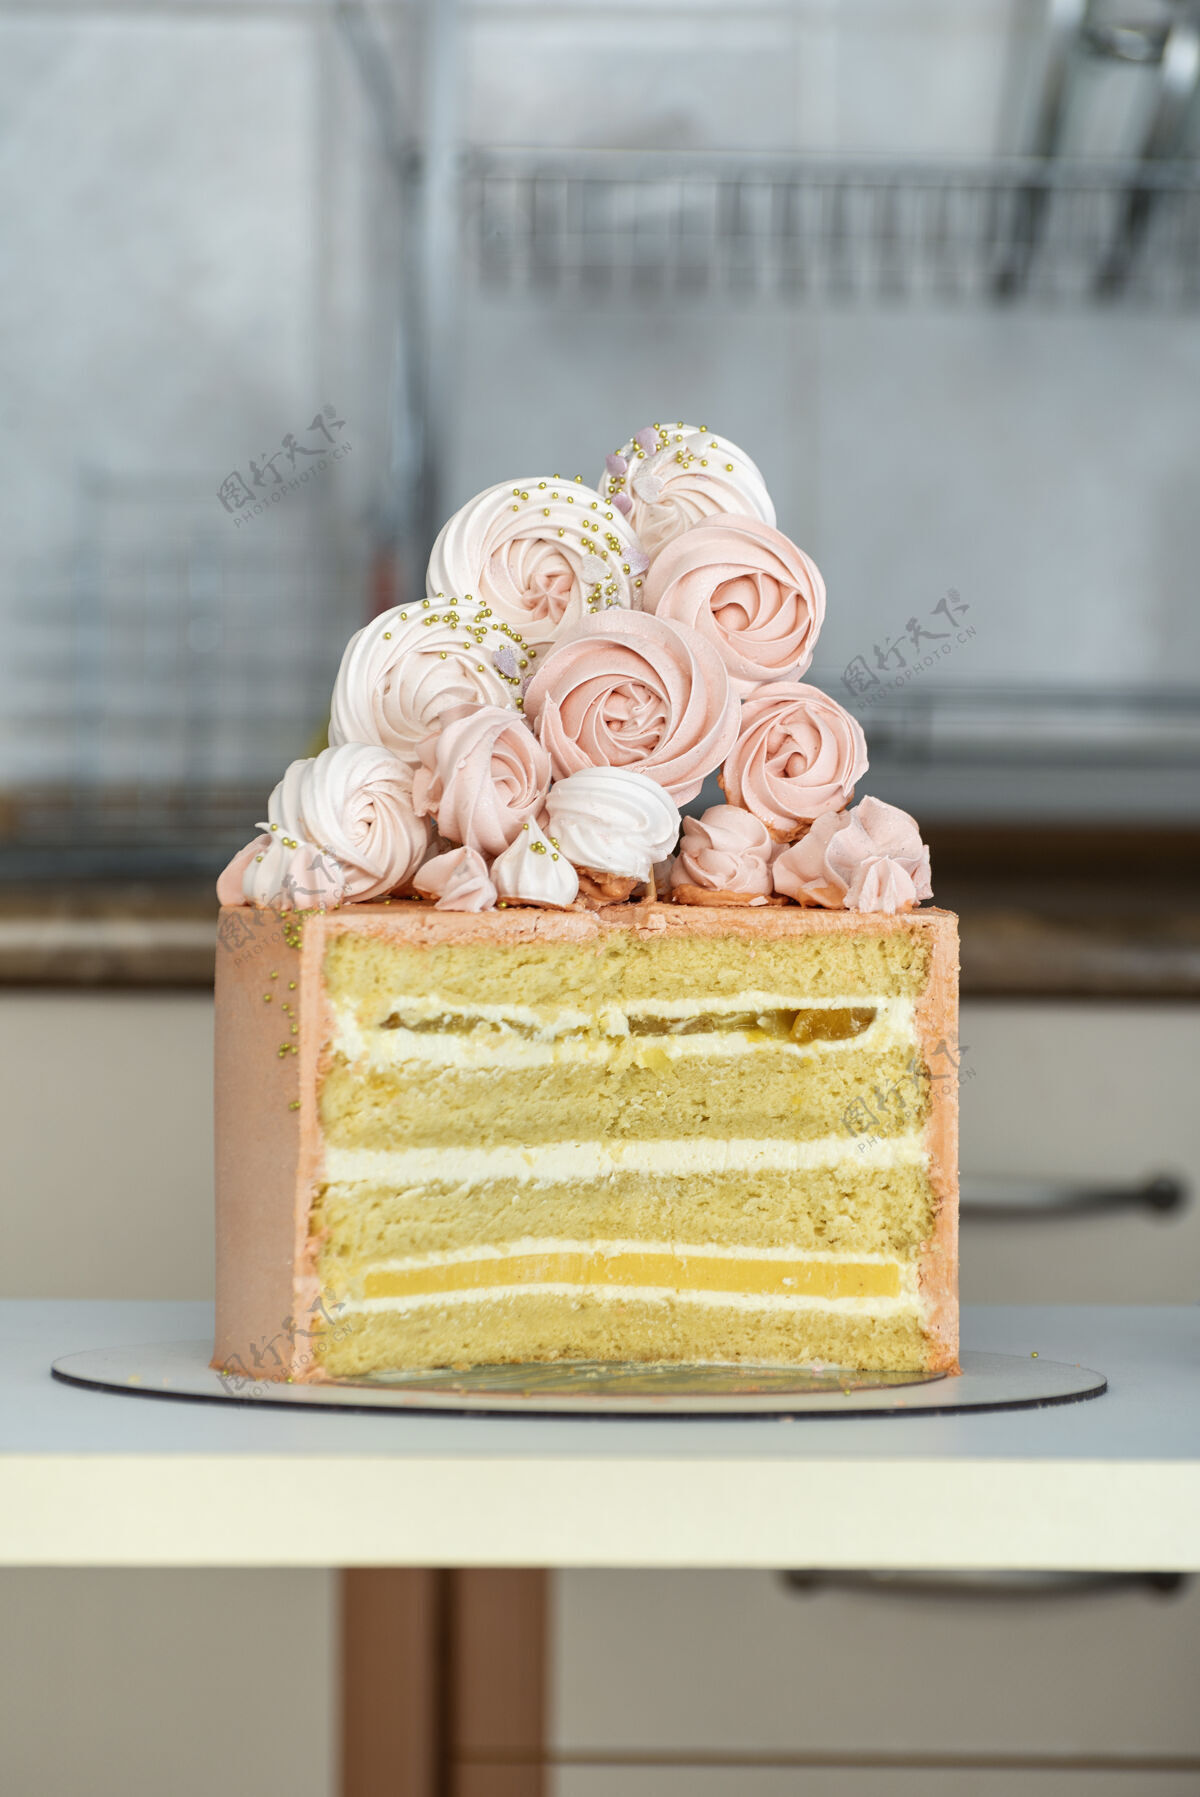 生日蛋糕用海绵蛋糕加香草和水果做成的蛋糕馅料.蛋白酥皮蛋糕装饰棉花糖灯光自制